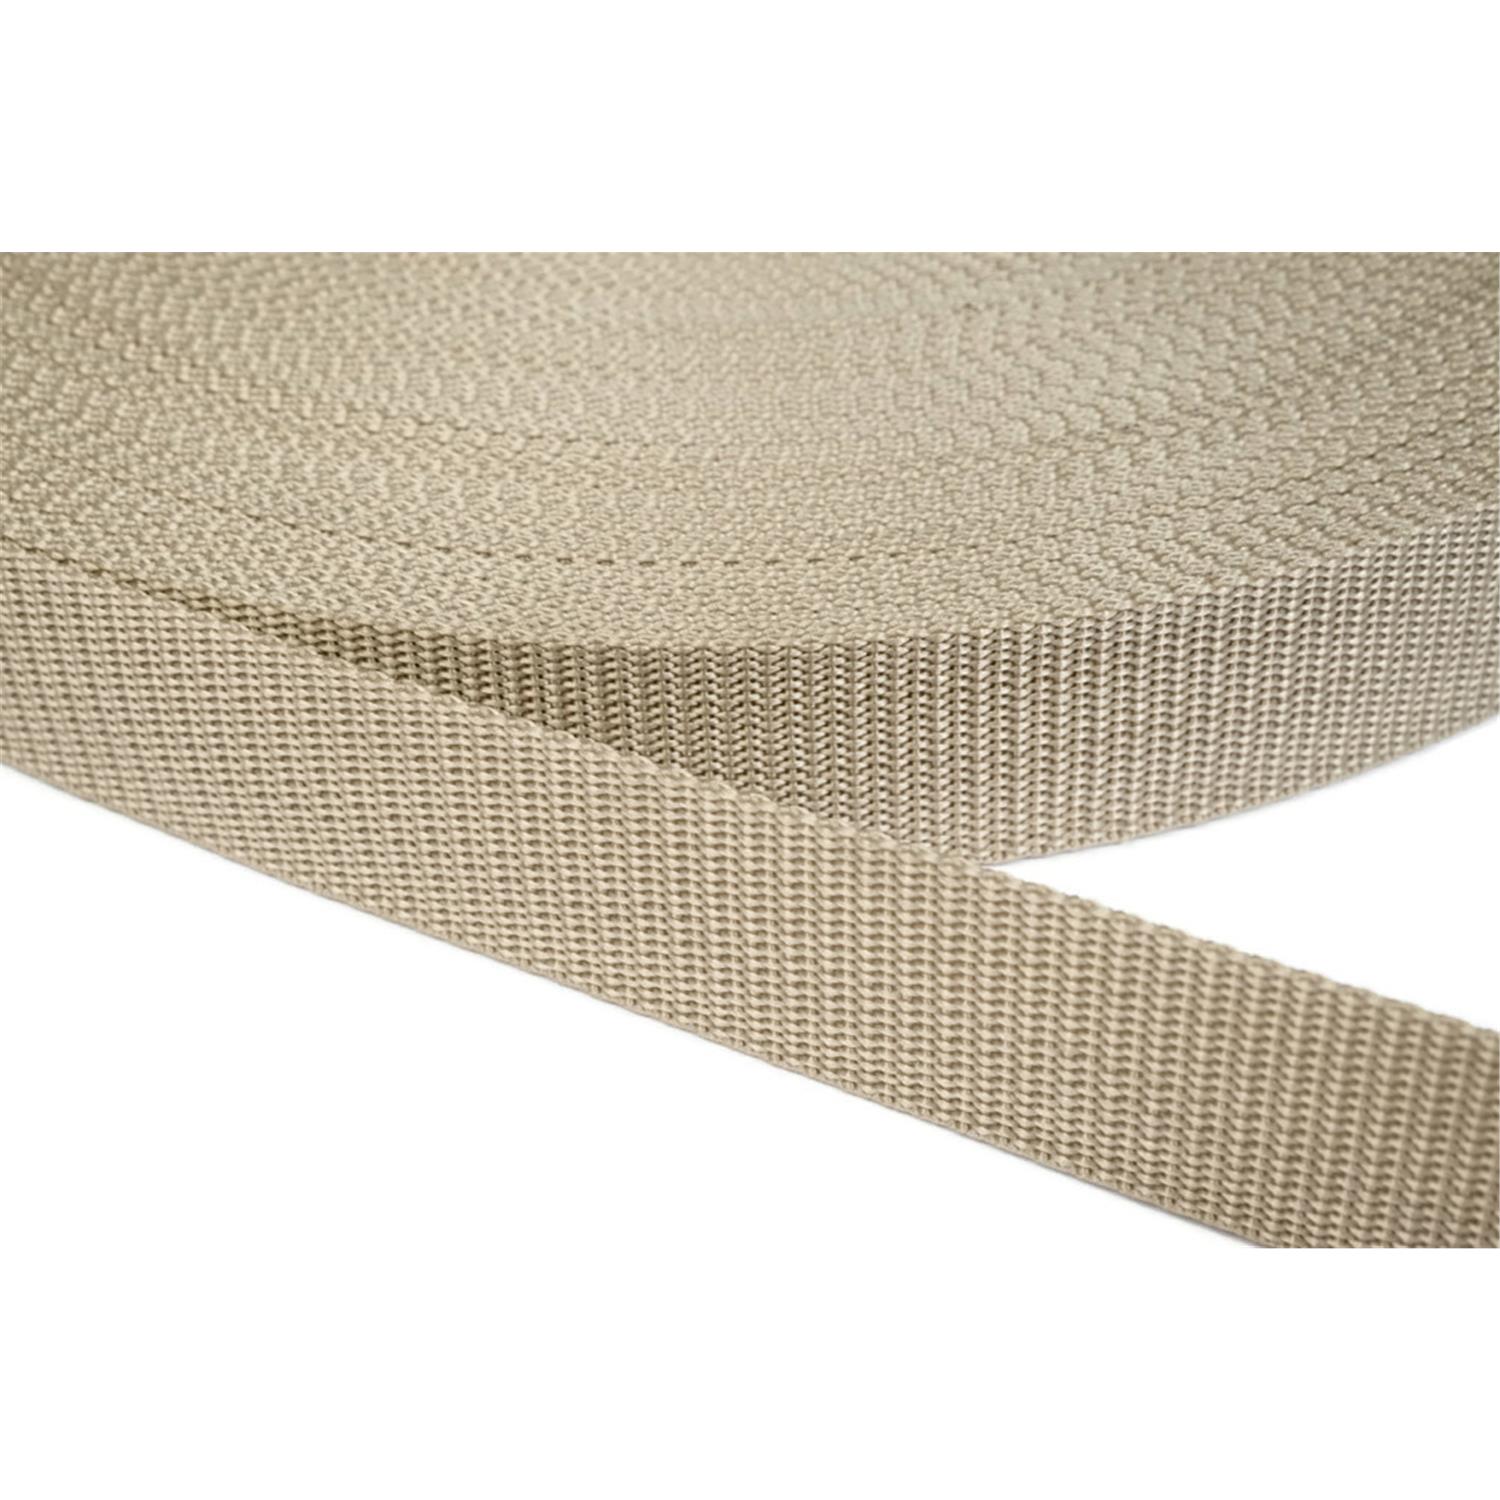 Gurtband 10mm breit aus Polypropylen in 41 Farben 03 - beige 50 Meter